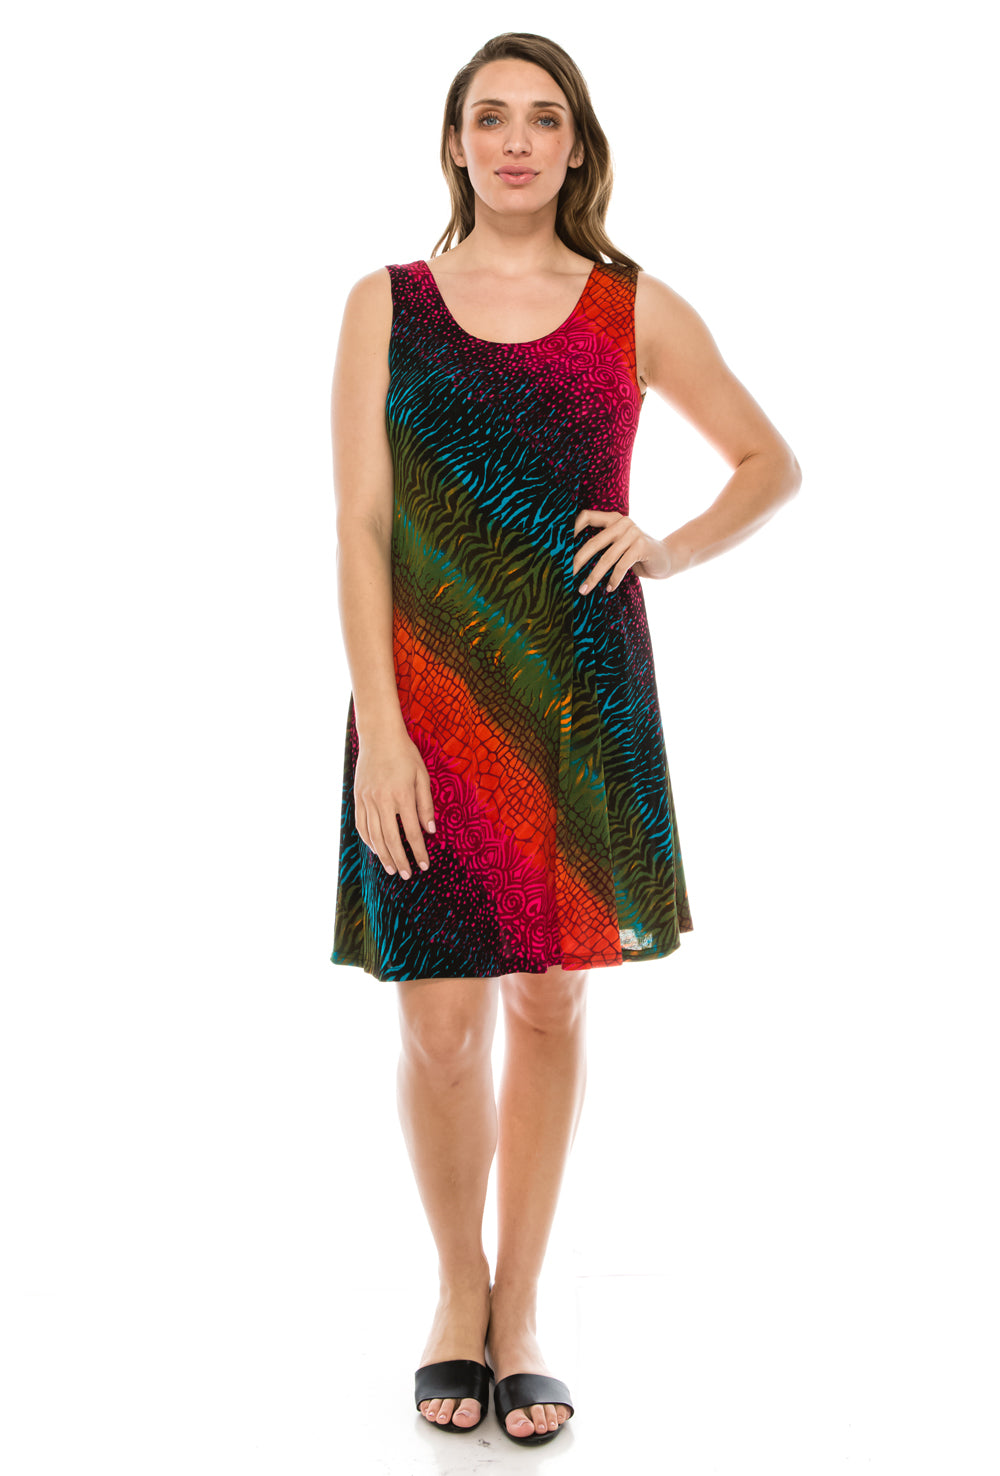 Jostar Women's Stretchy Missy Tank Dress Print, 703BN-TP-W182 - Jostar Online